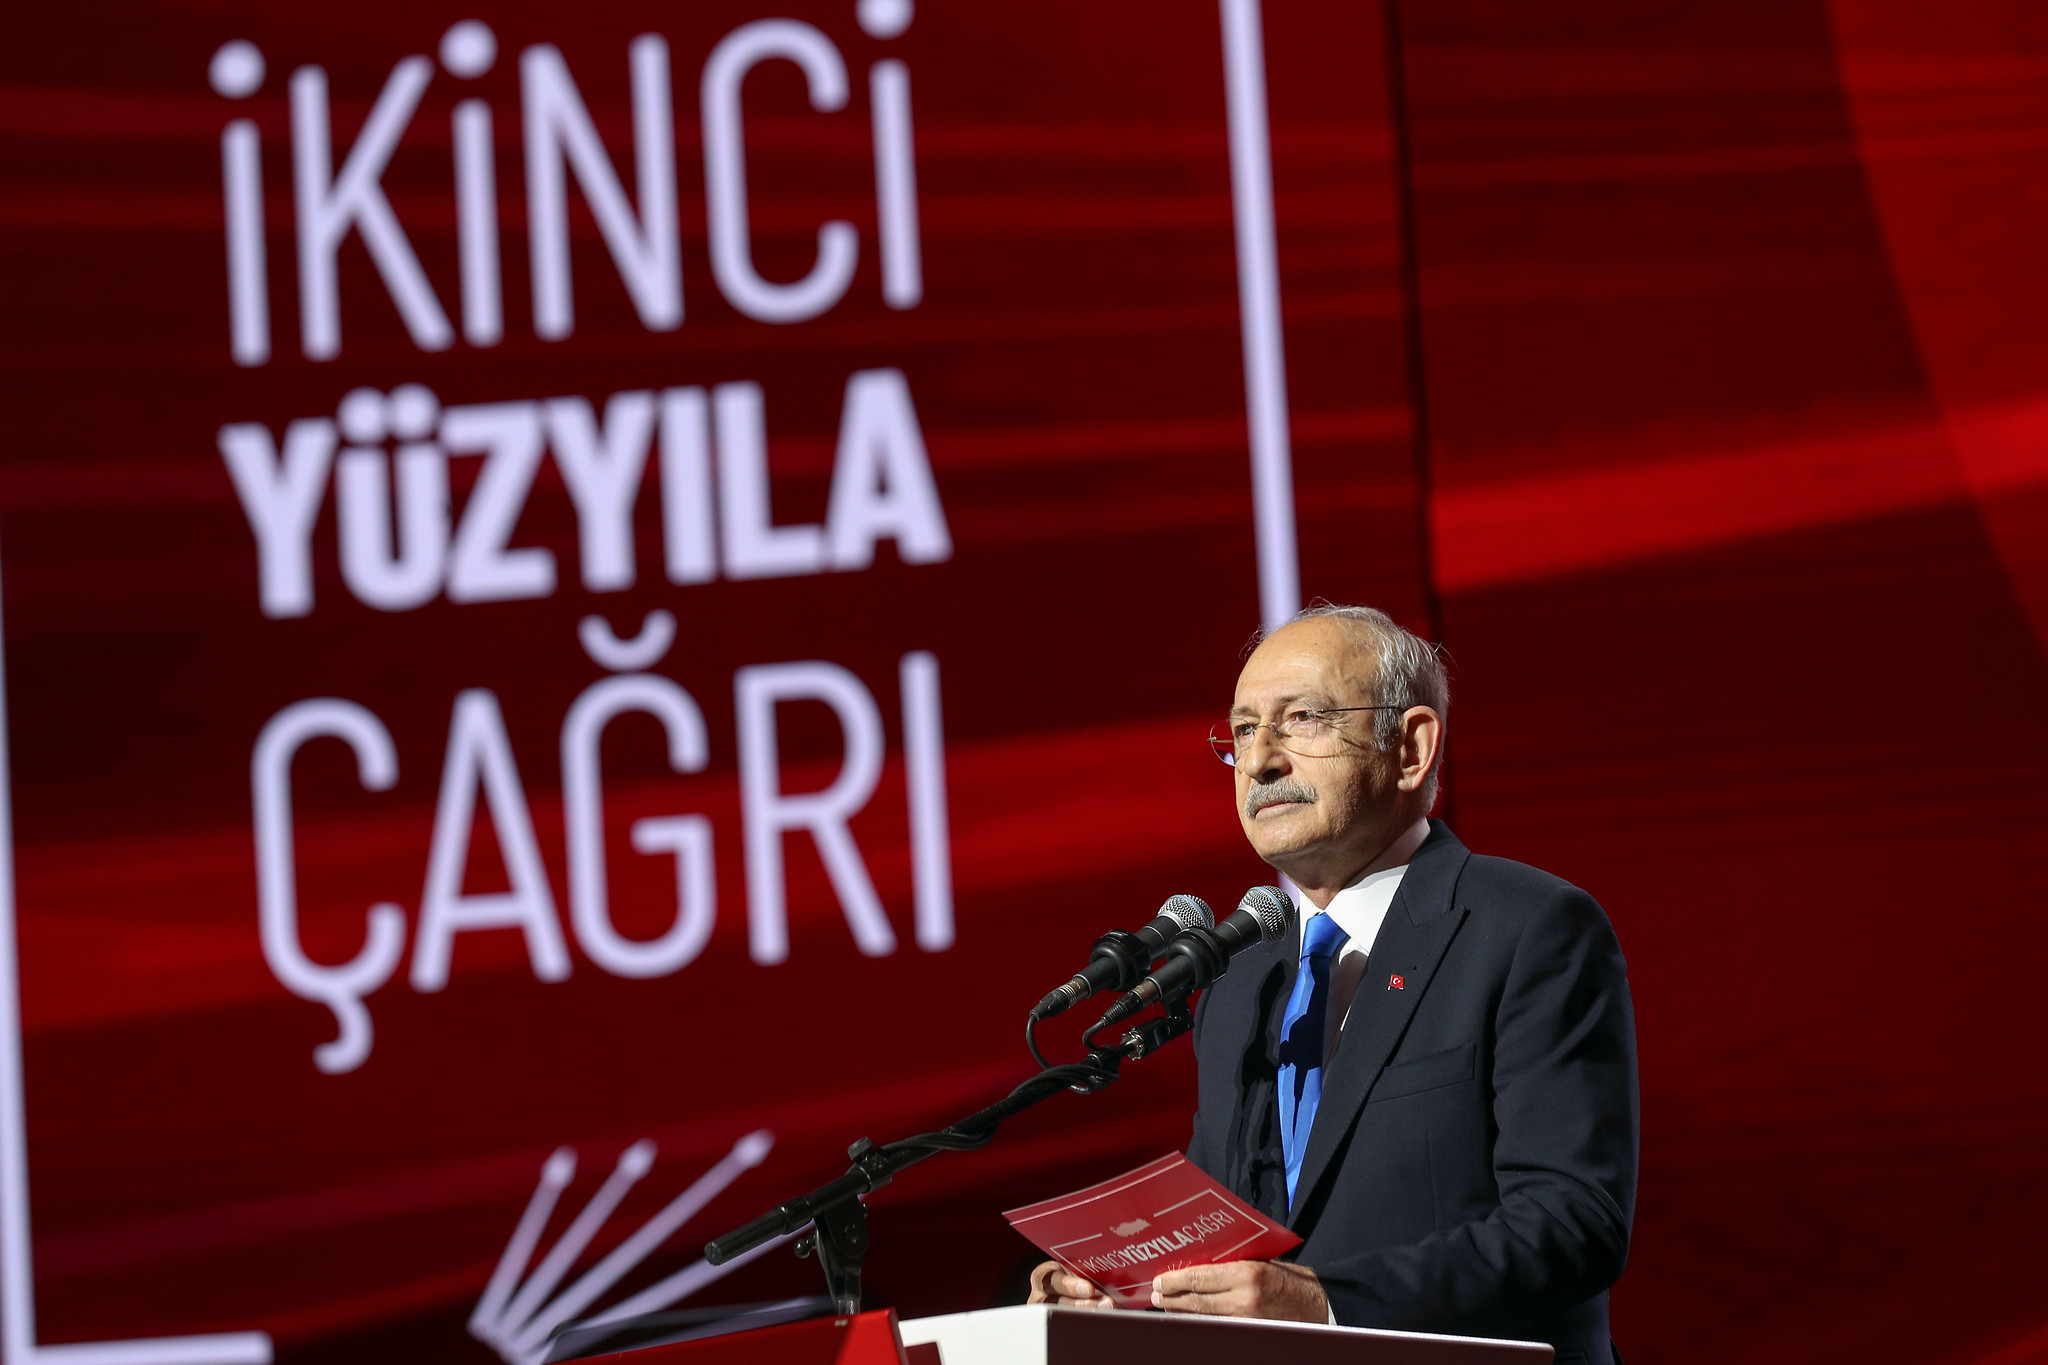 Kemal Kılıçdaroğlu İkinci Yüzyıla Çağrı Buluşması (1)